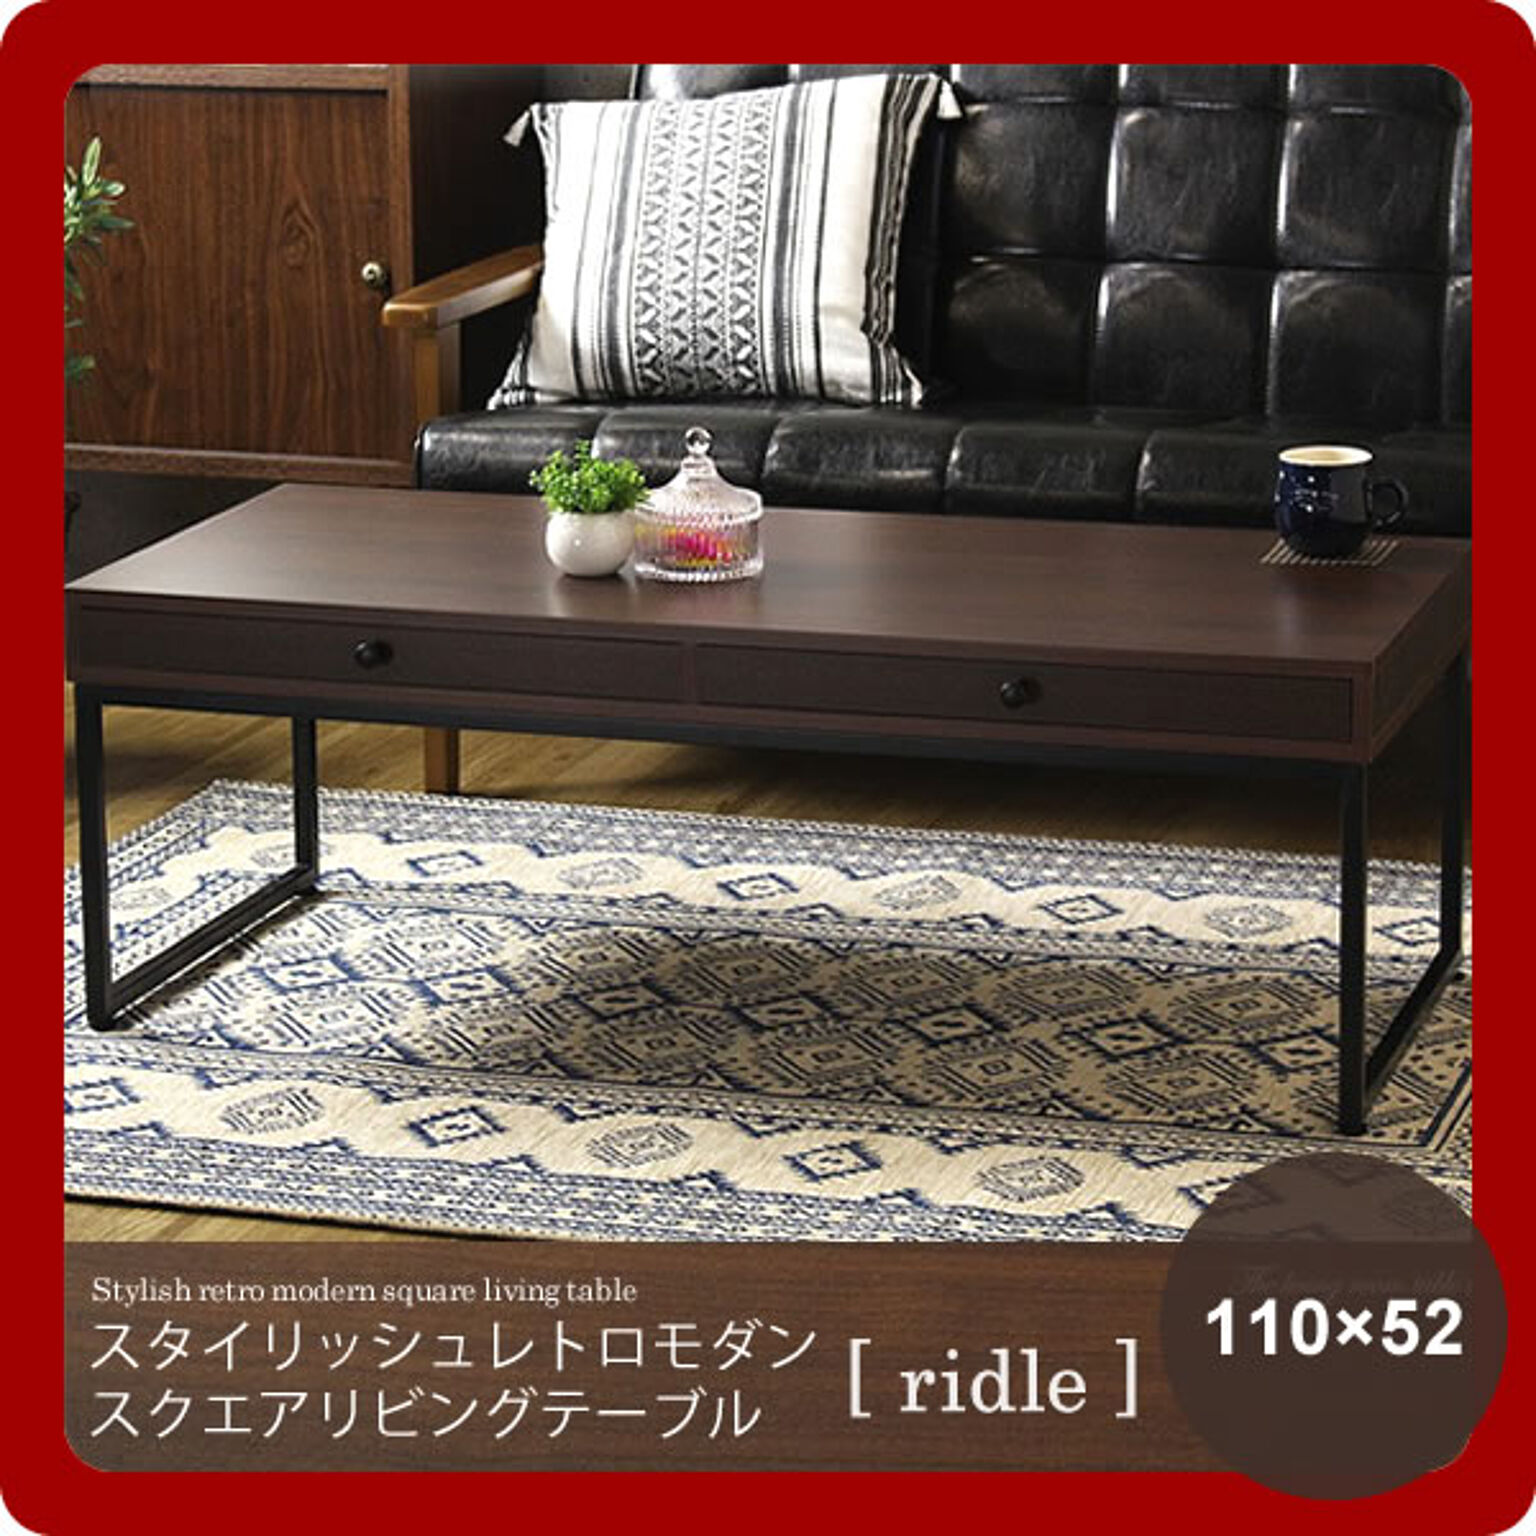 105×47 ： スタイリッシュレトロモダン スクエアリビングテーブル【ridle】 ブラウン(brown) (アーバン) ローテーブル センターテーブル 引き出し 北欧 